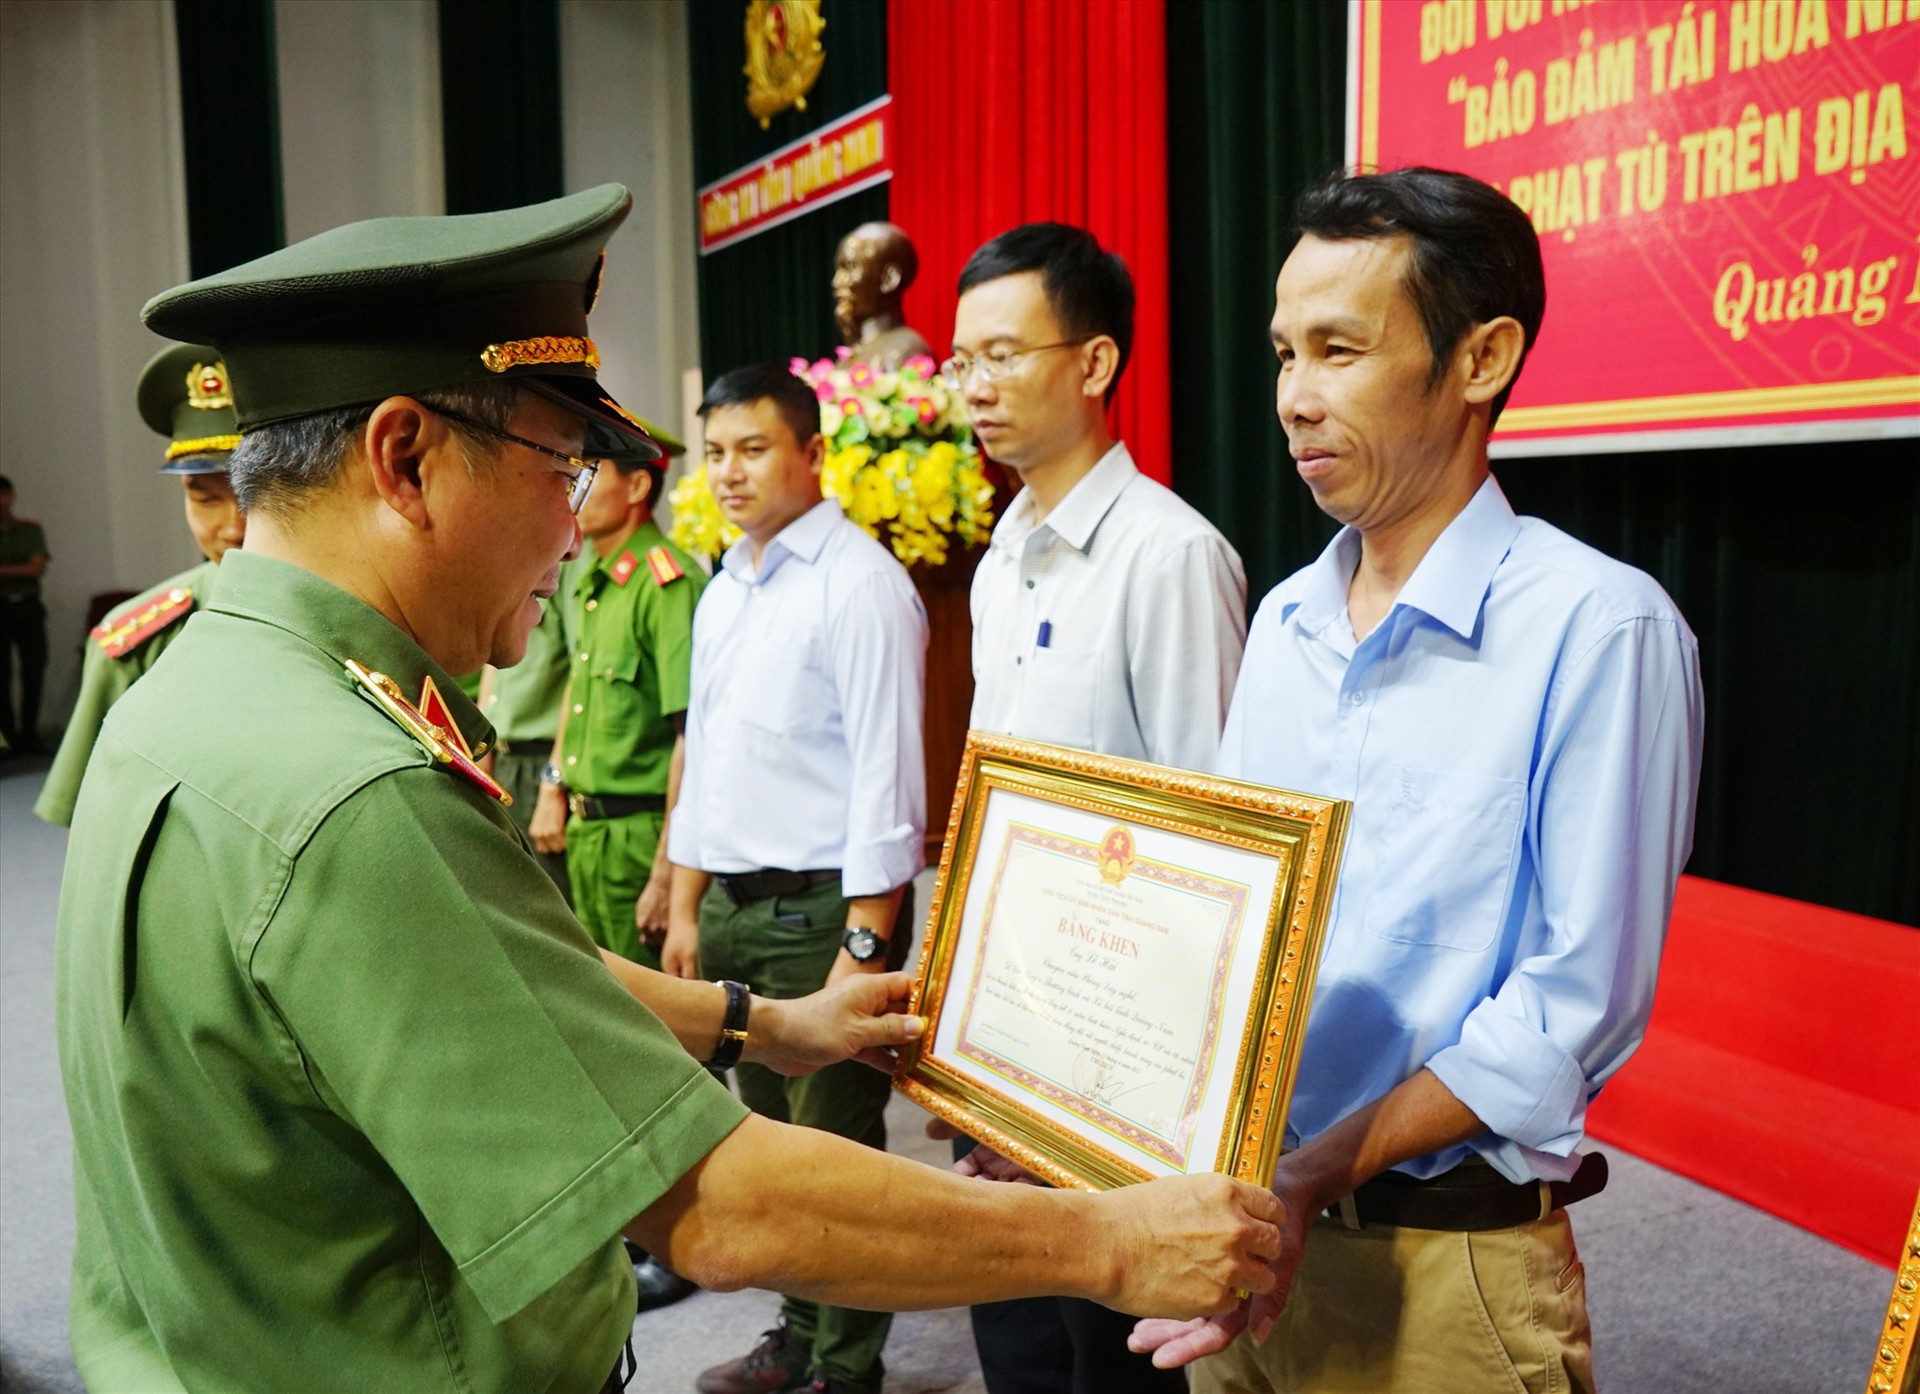 Thiếu tướng Nguyễn Đức Dũng - Giám đốc Công an tỉnh trao bằng khen các cá nhân có nhiều đóng góp trong giúp đỡ người chấp hành xong án phạt tù tái hòa nhập cộng đồng. Ảnh: T.C